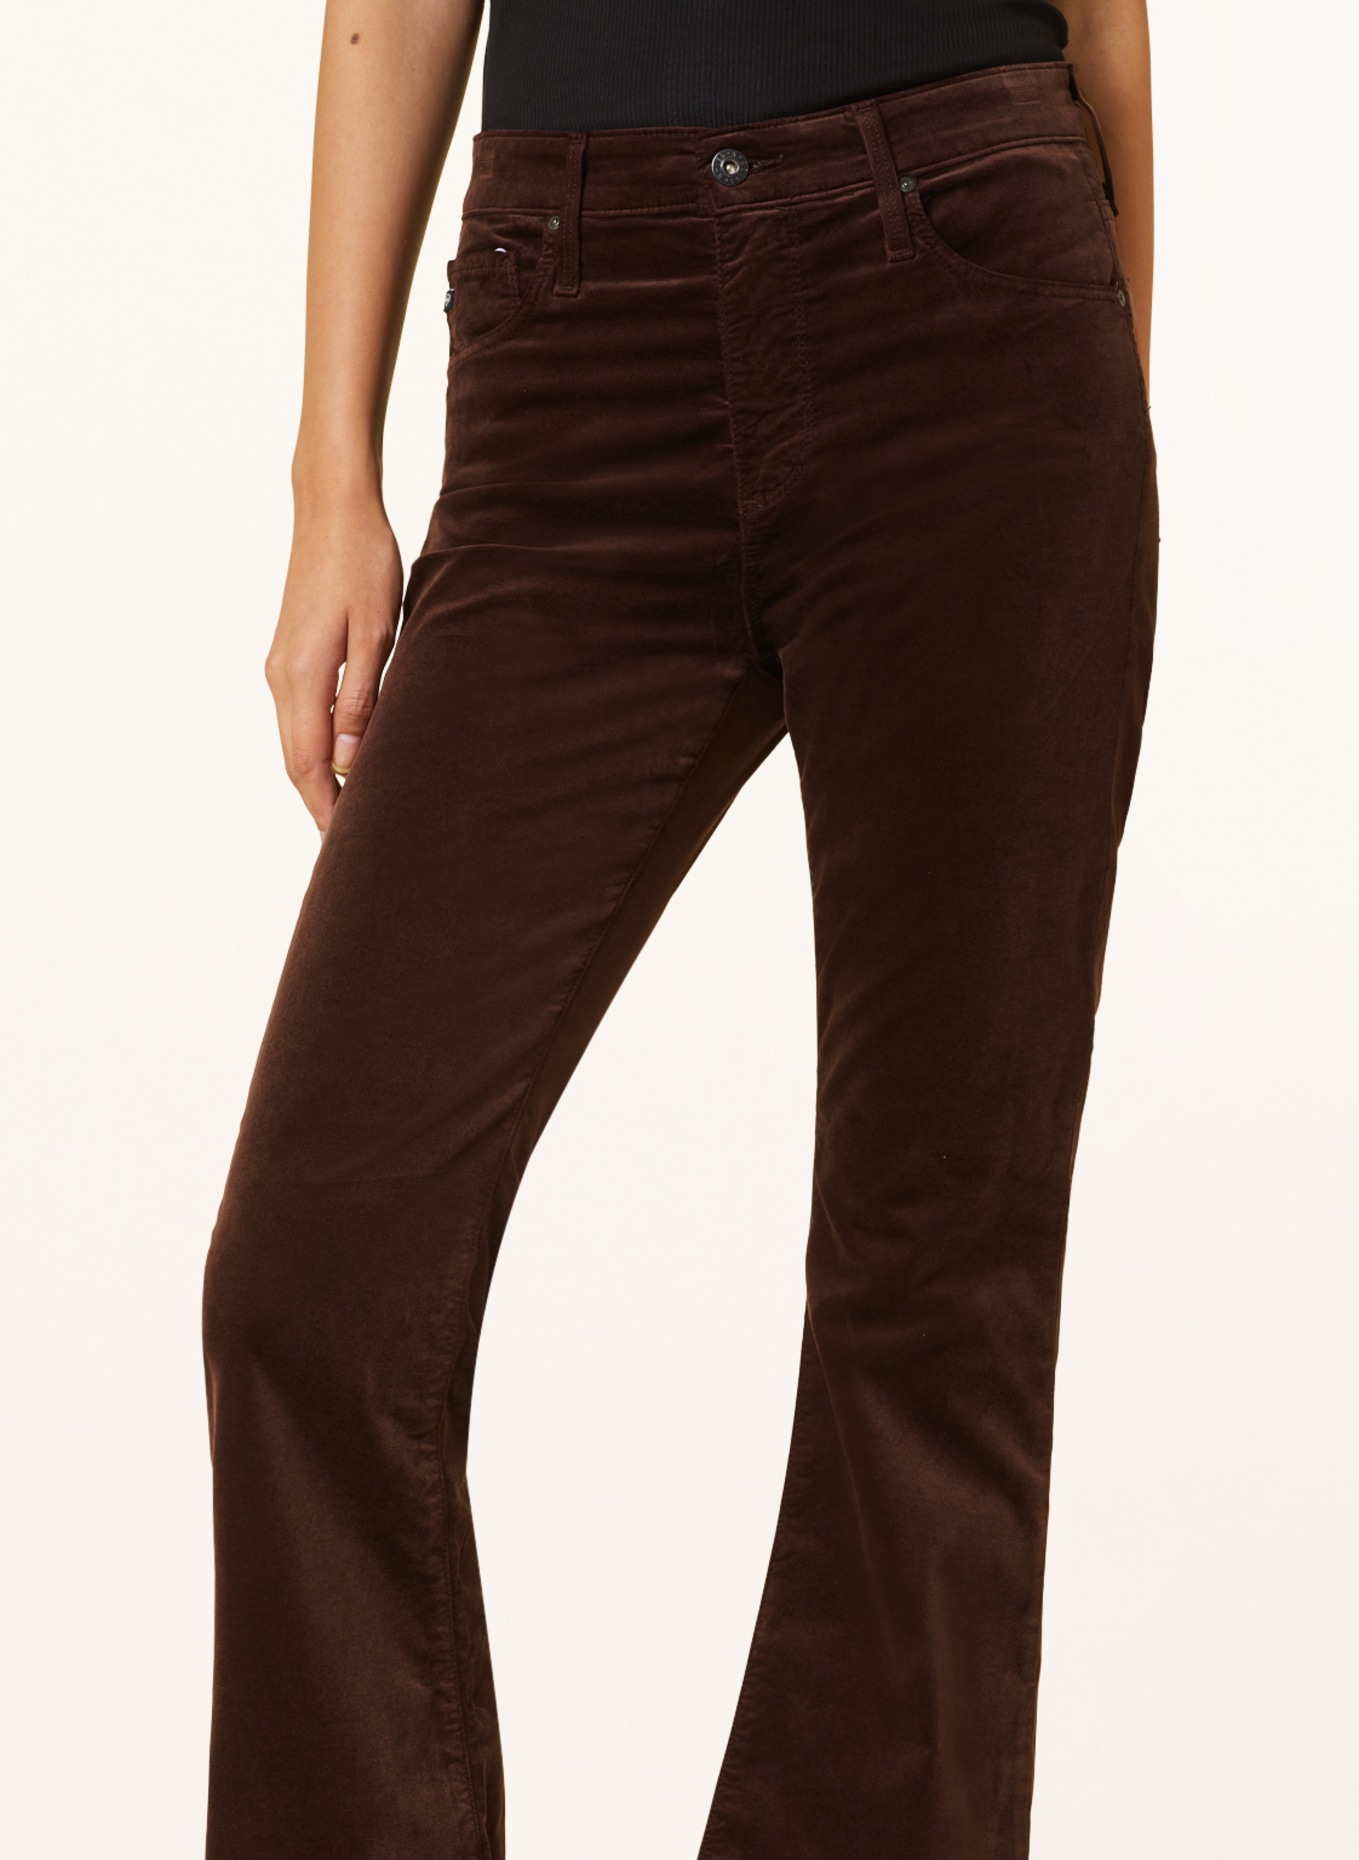 LOFT Chocolate Brown Velvet Pull On Pants | Pull on pants, Pants, Velvet  pants